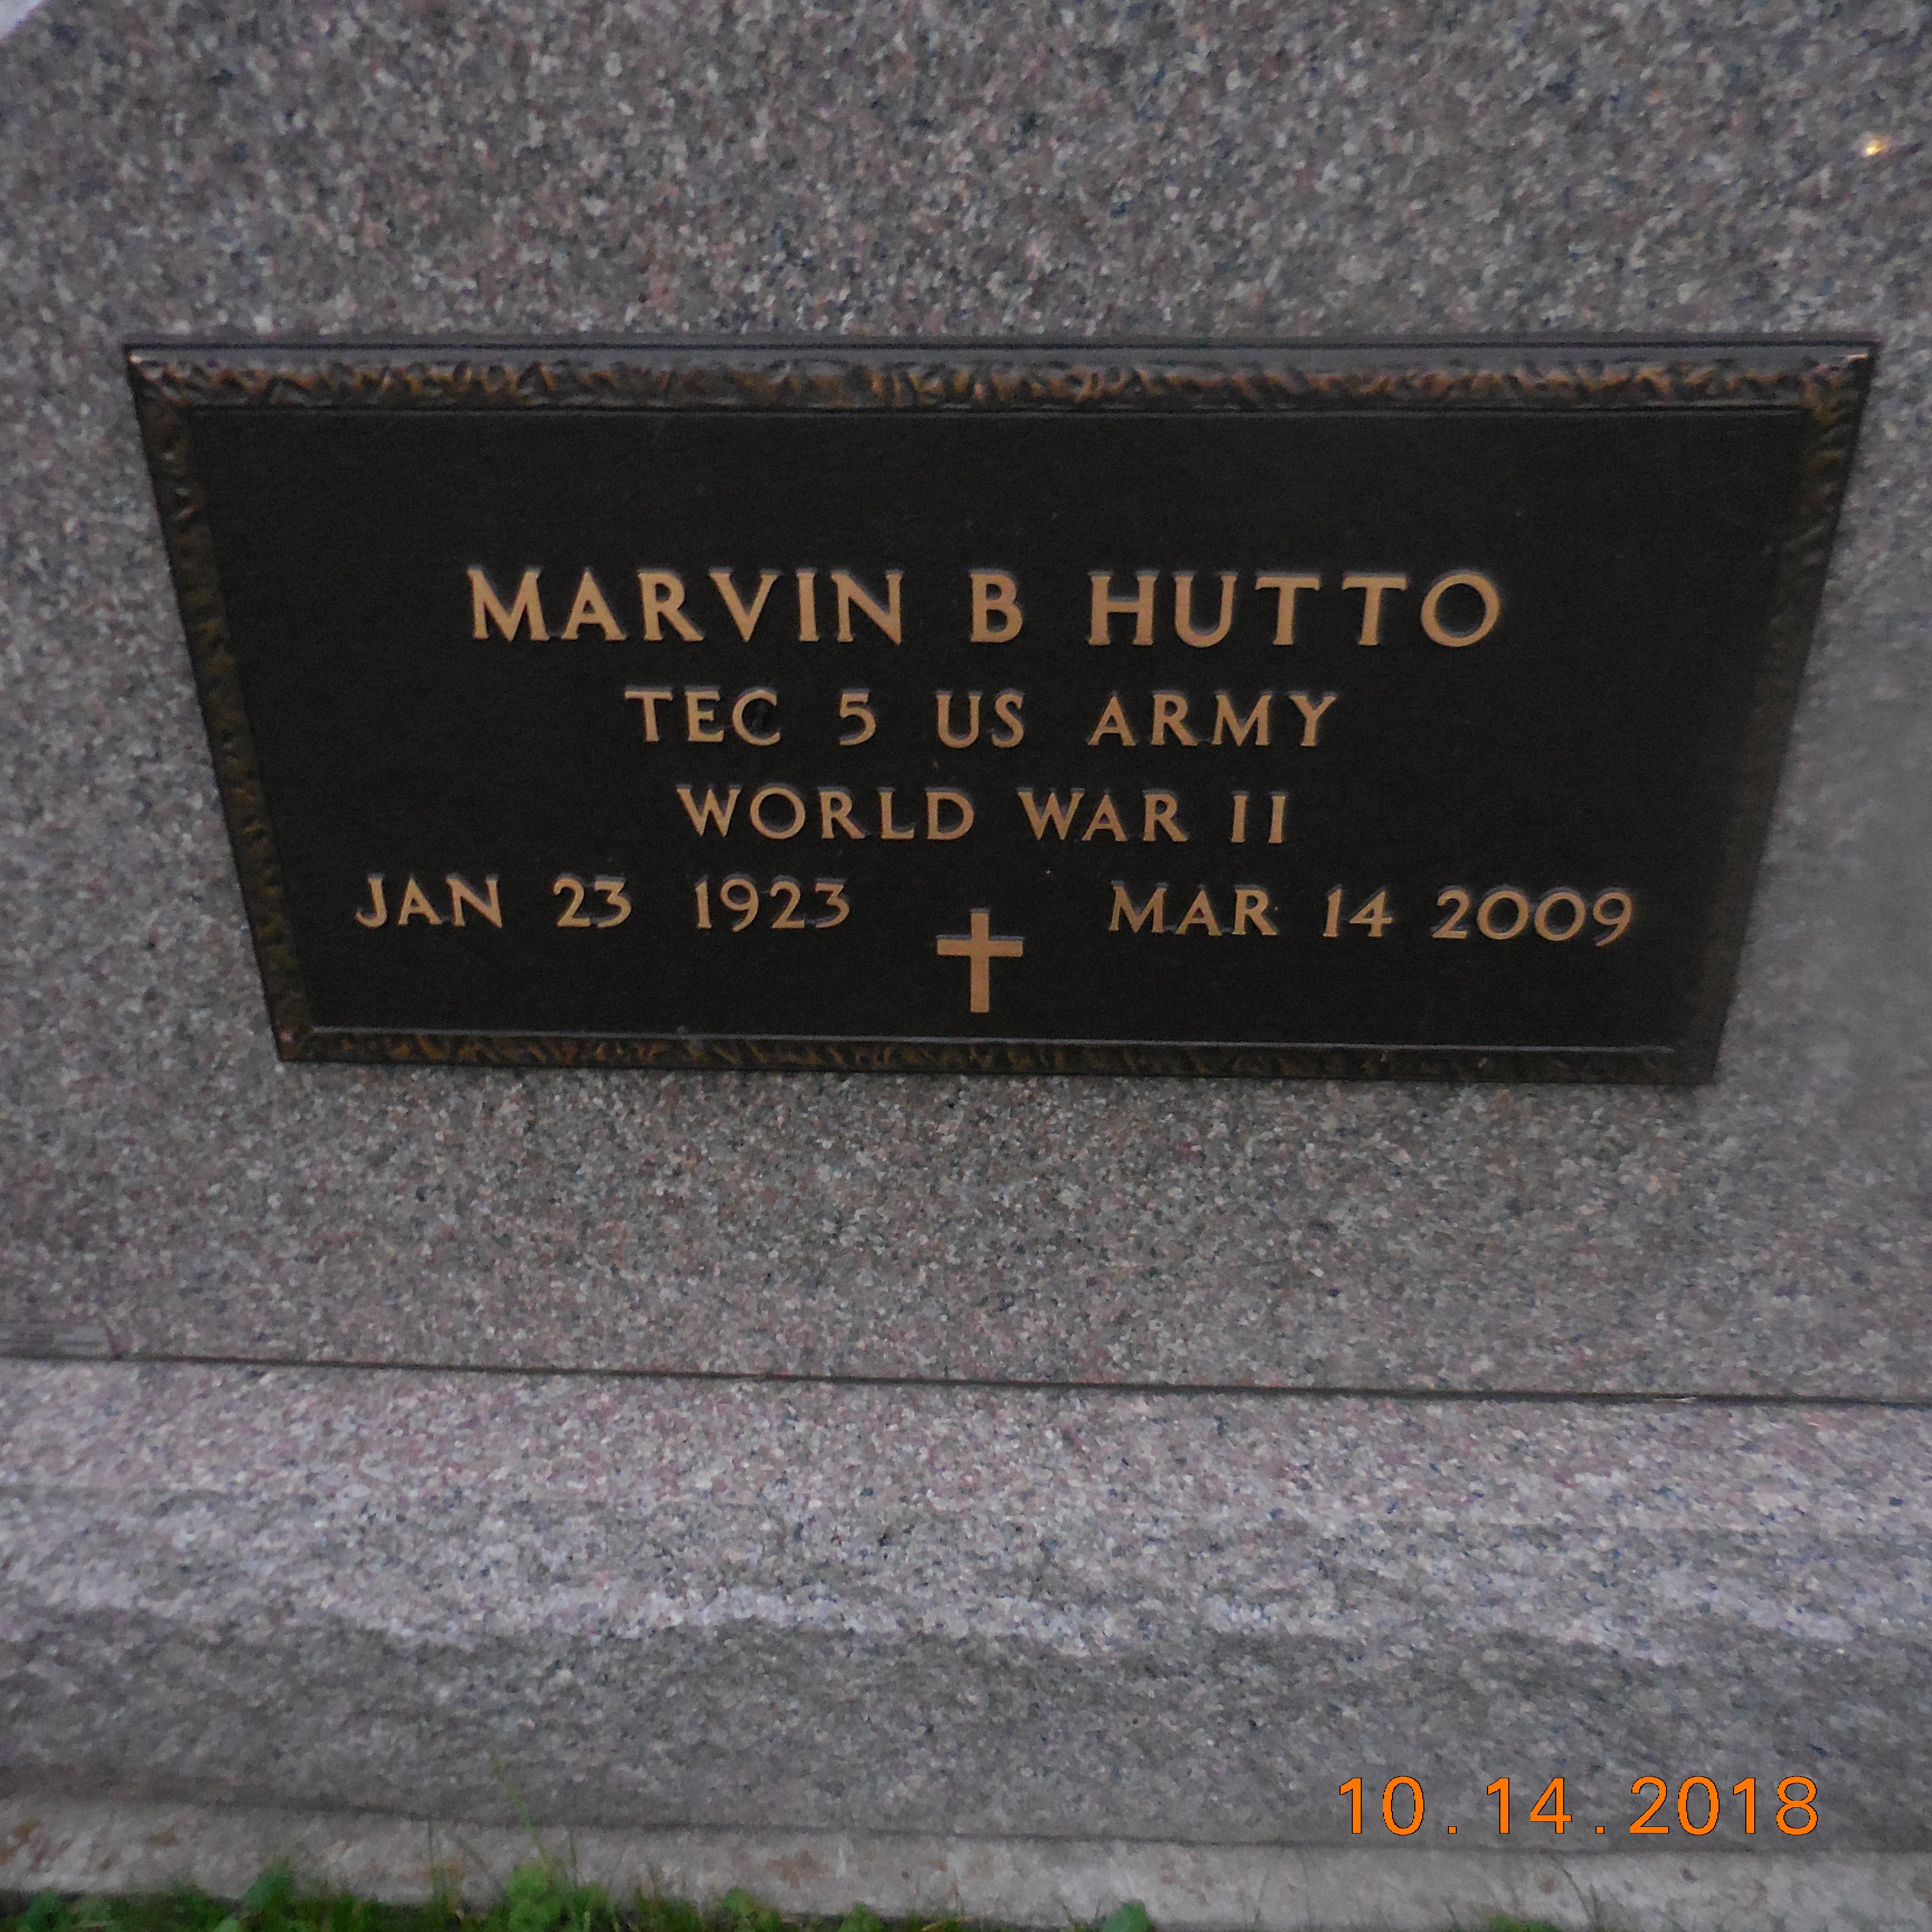 Marvin B. Hutto